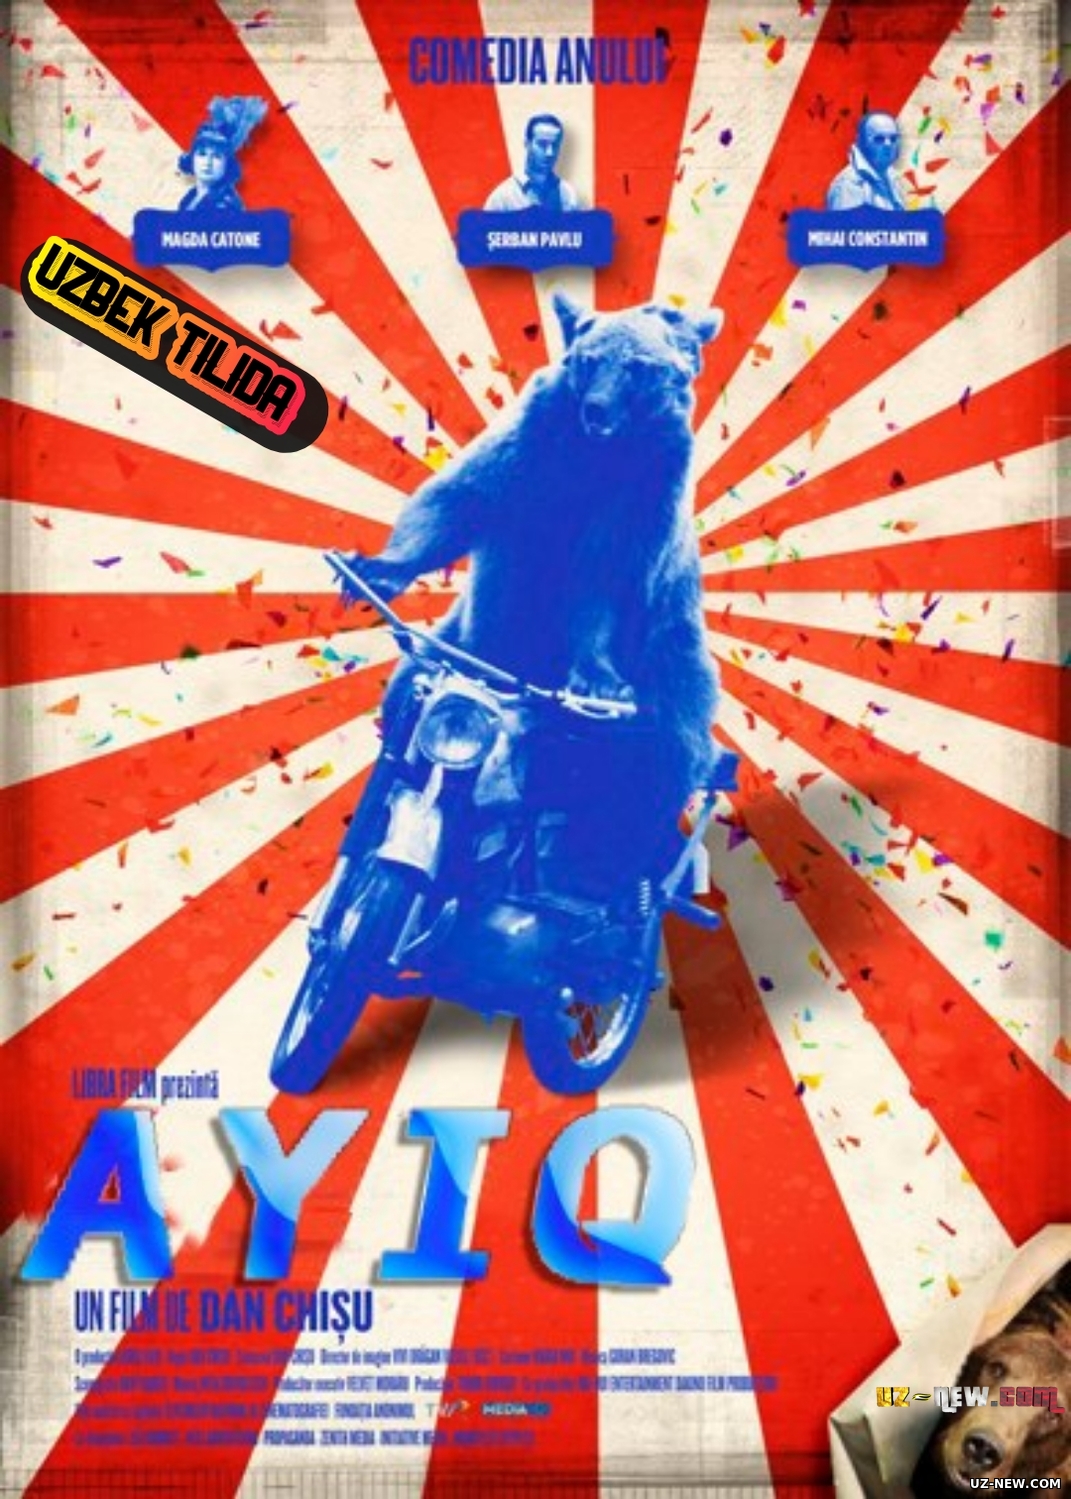 Ayiq (Komediya film 2011 Uzbek tilida)